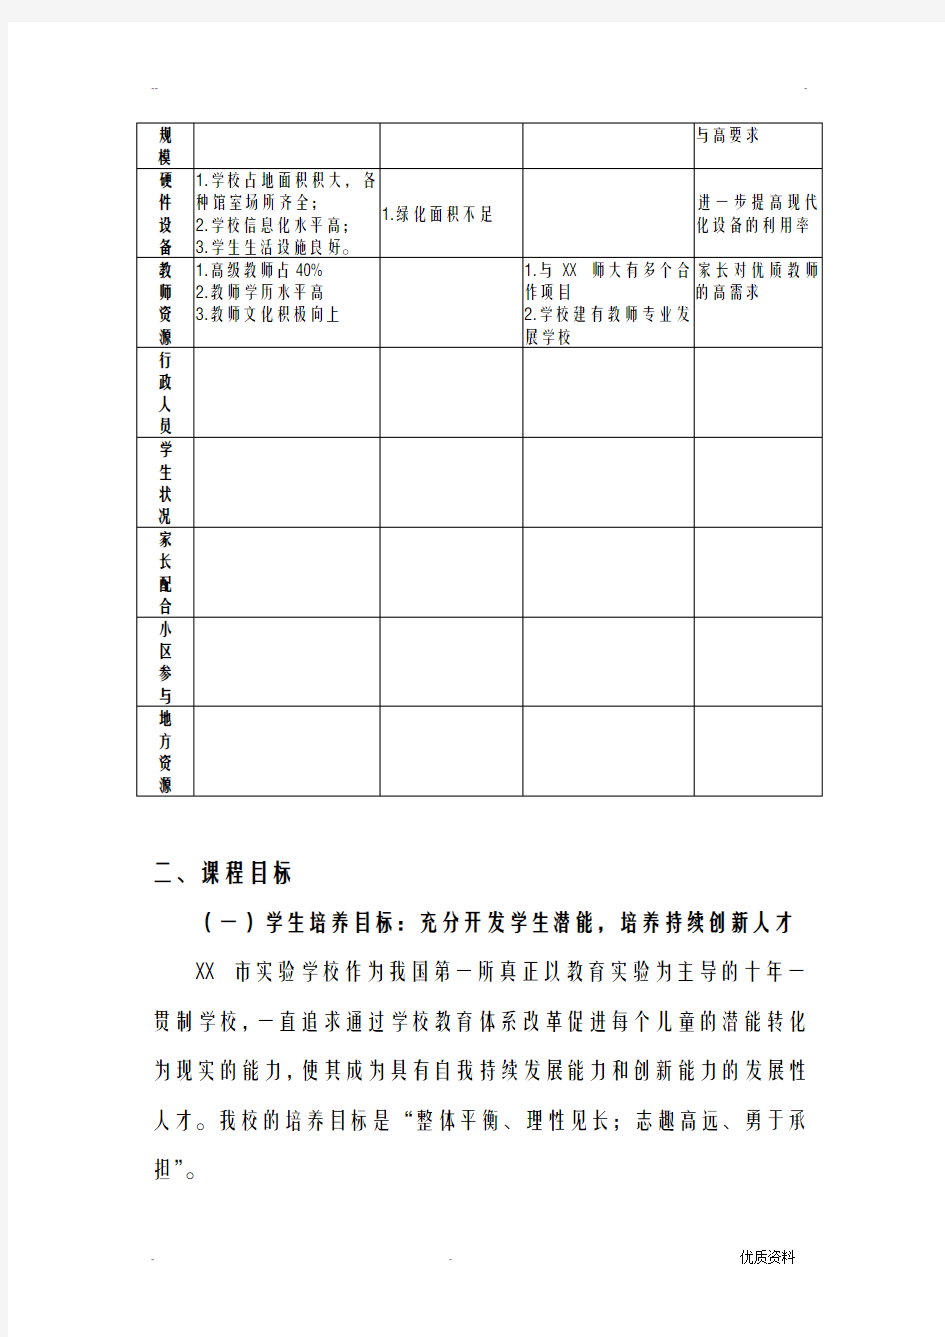 上海市实验学校课程规划